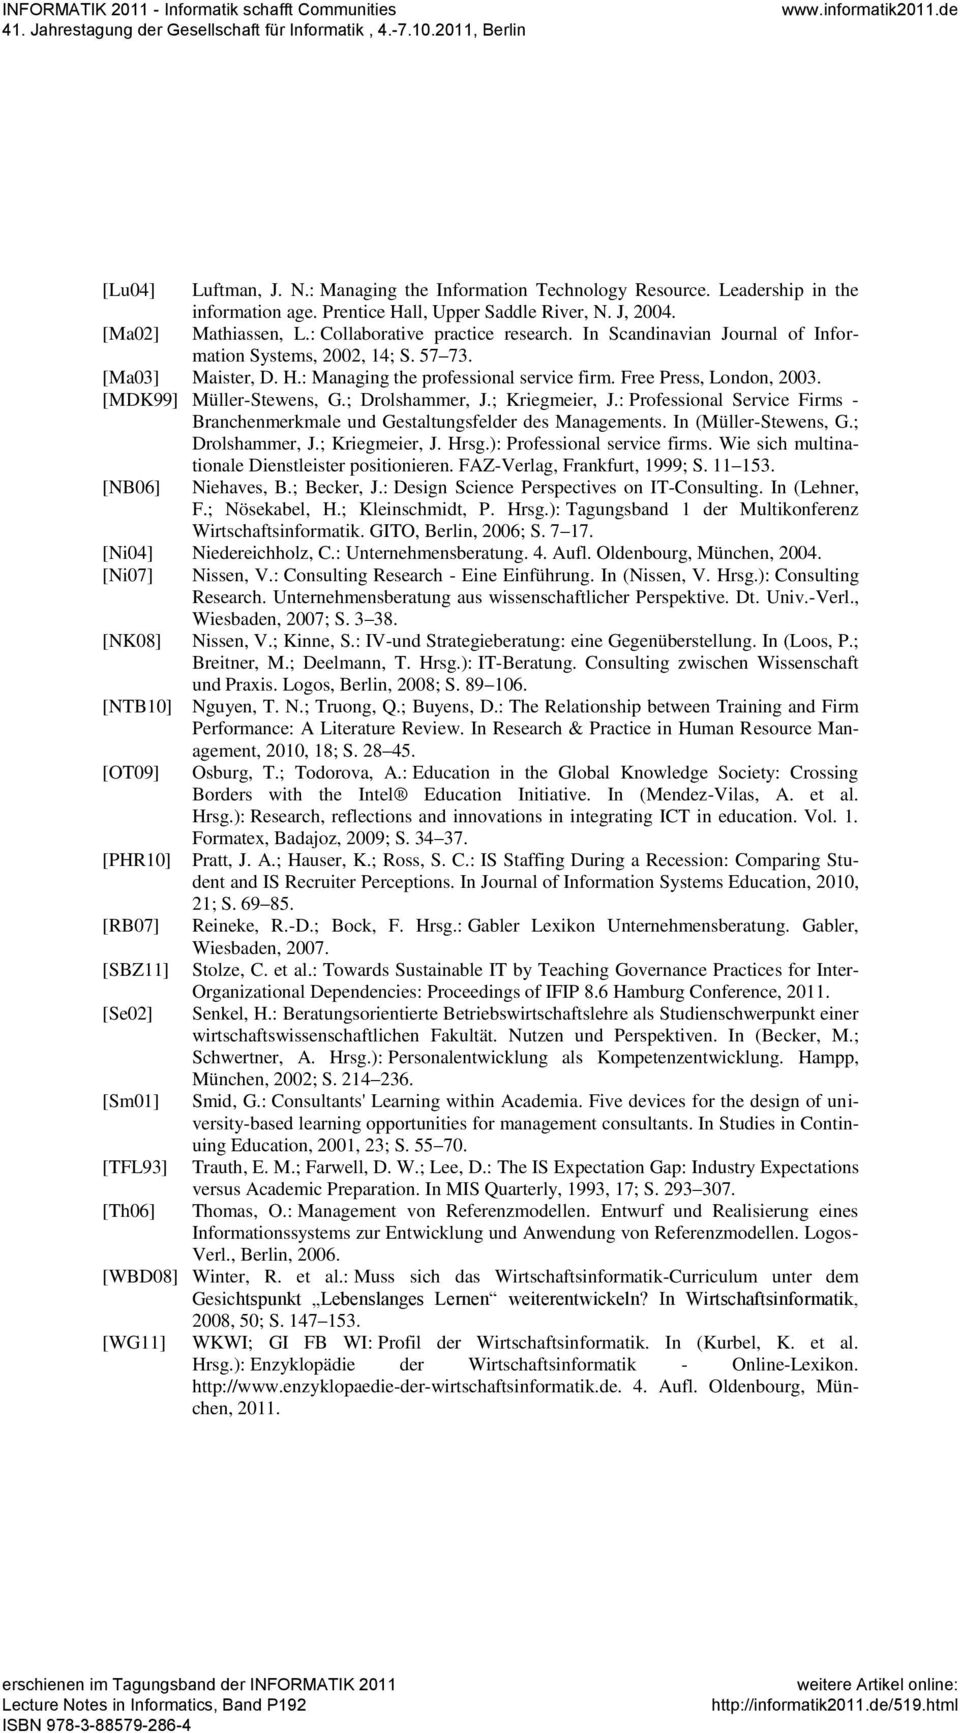 [MDK99] Müller-Stewens, G.; Drolshammer, J.; Kriegmeier, J.: Professional Service Firms - Branchenmerkmale und Gestaltungsfelder des Managements. In (Müller-Stewens, G.; Drolshammer, J.; Kriegmeier, J. Hrsg.